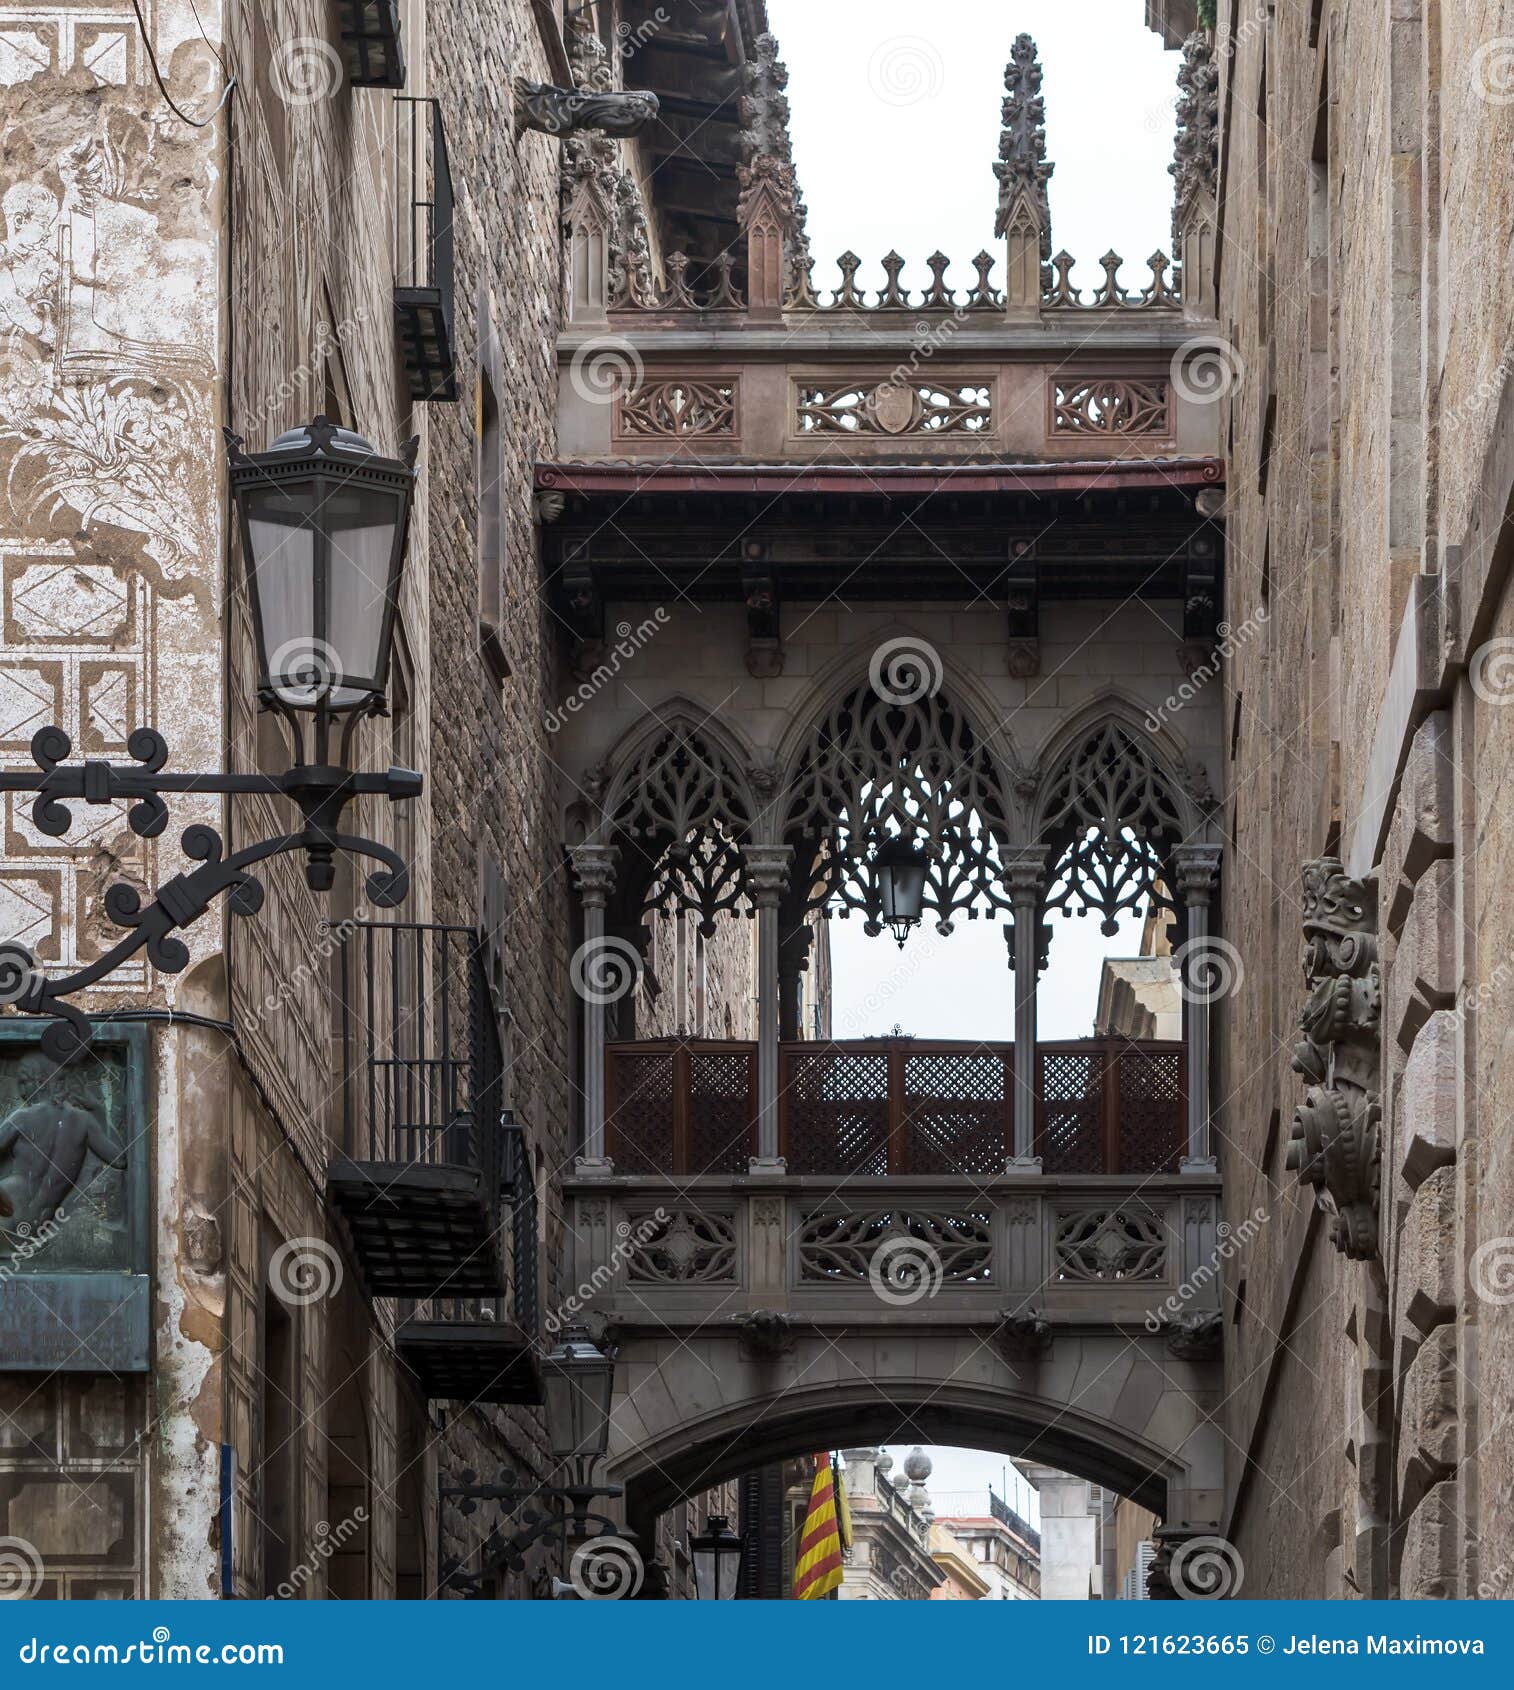 Ã¢â¬Ëpont del bisbeÃ¢â¬Ë or Ã¢â¬ËbishopÃ¢â¬â¢s bridgeÃ¢â¬â¢ in gothic quarter of barcelona